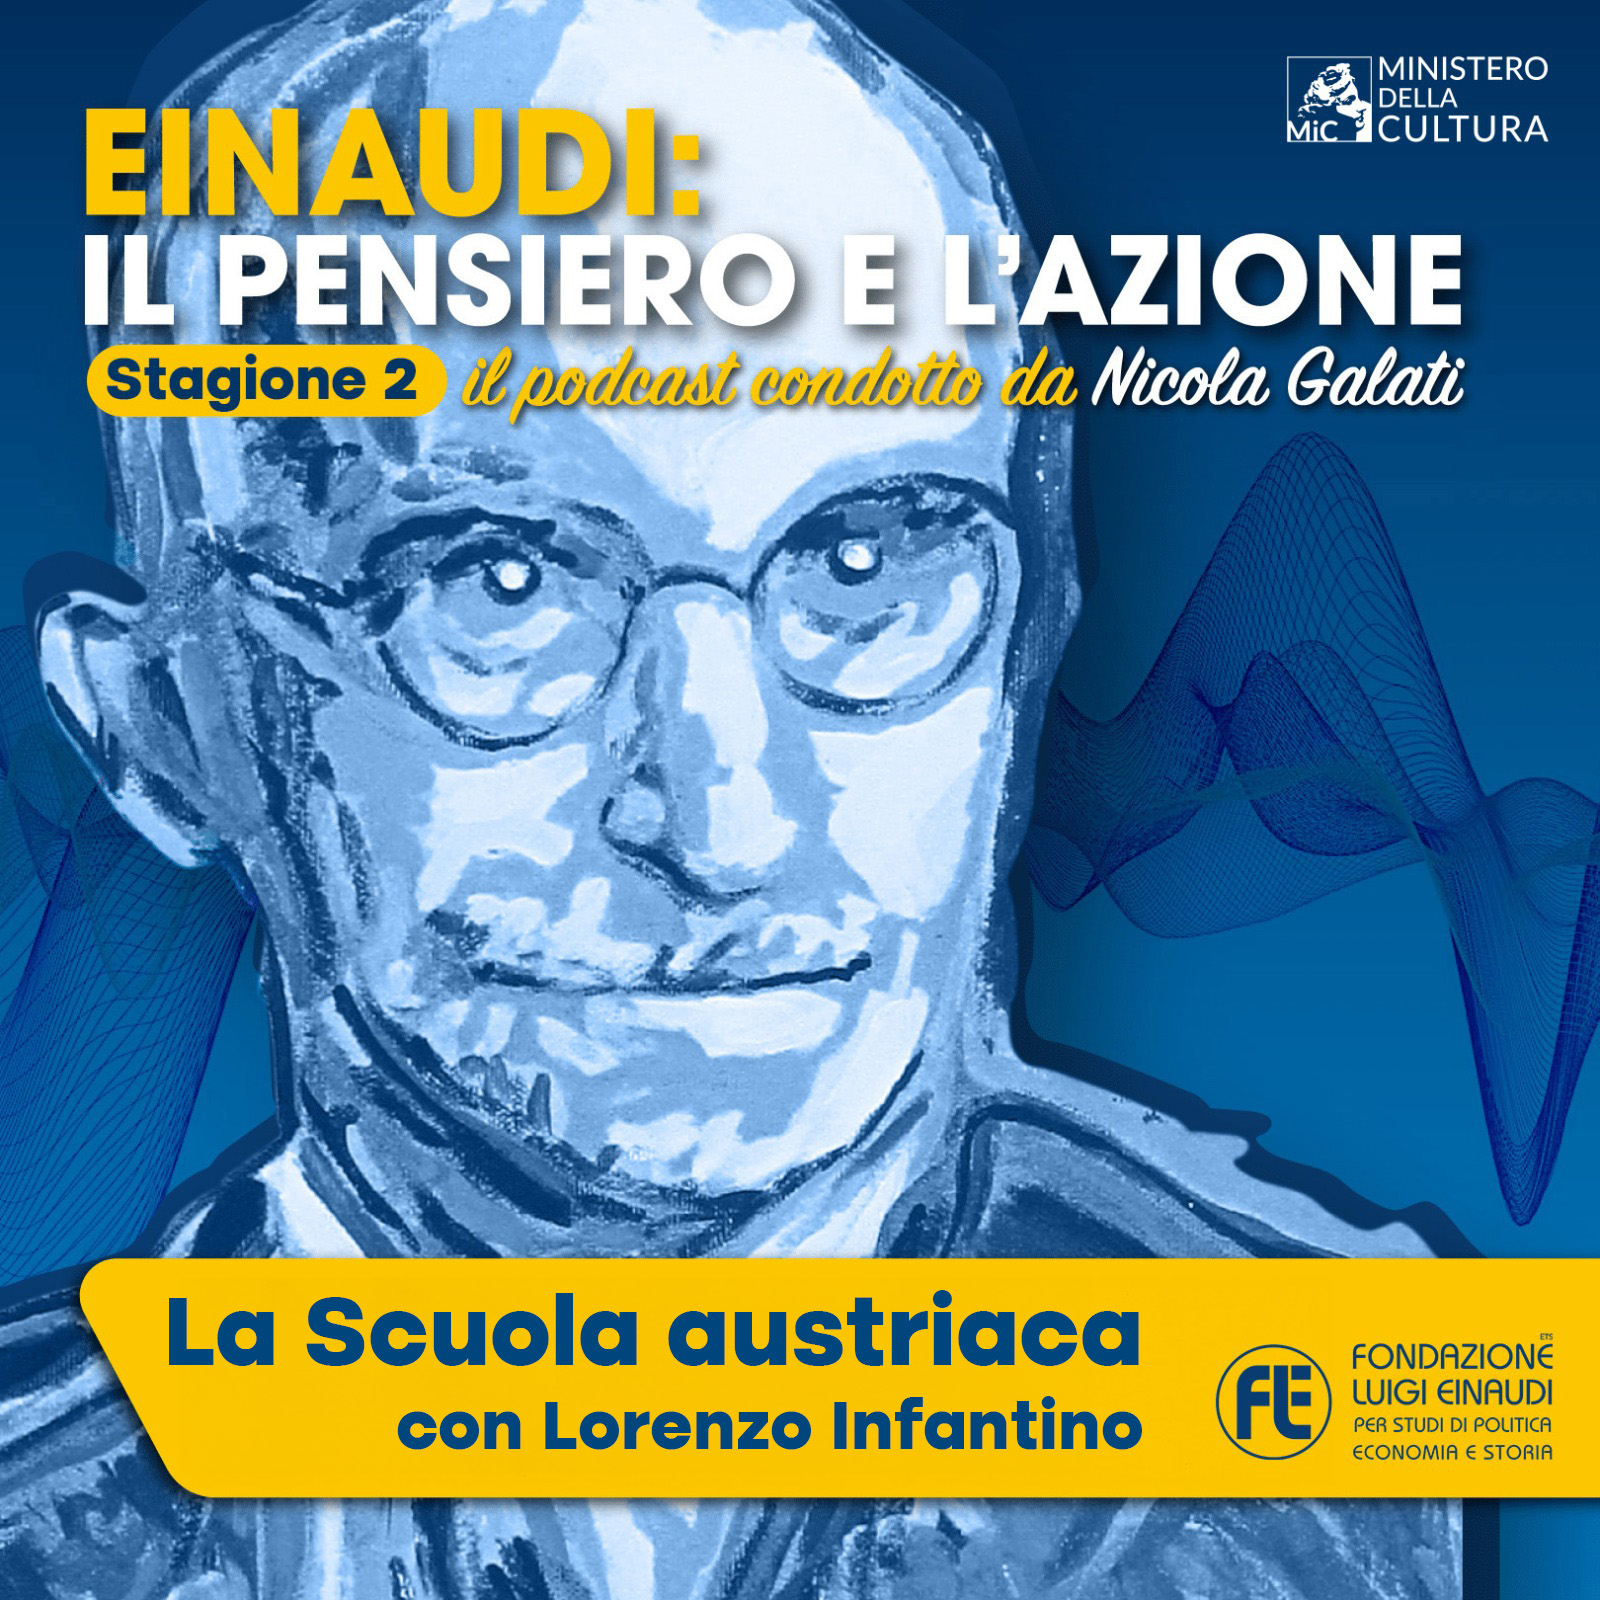 Einaudi: il pensiero e l’azione – “La Scuola austriaca” con Lorenzo Infantino